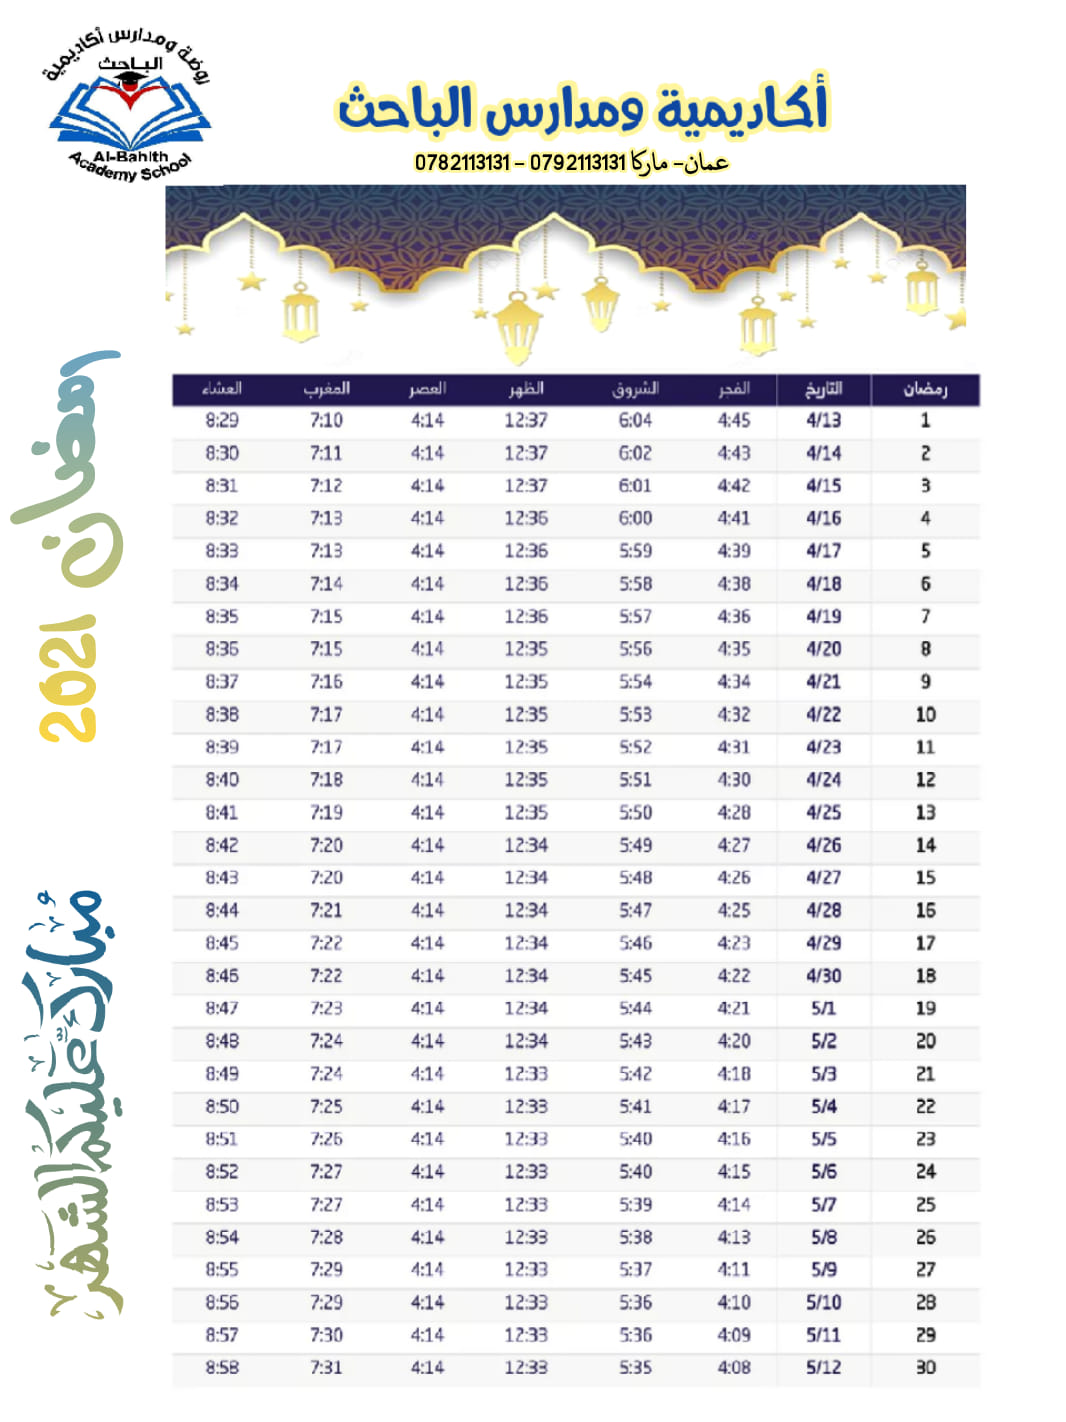 أسرة أكاديمية ومدارس الباحث تهنئكم بحلول شهر رمضان المبارك وكل عام وانتم بخير 